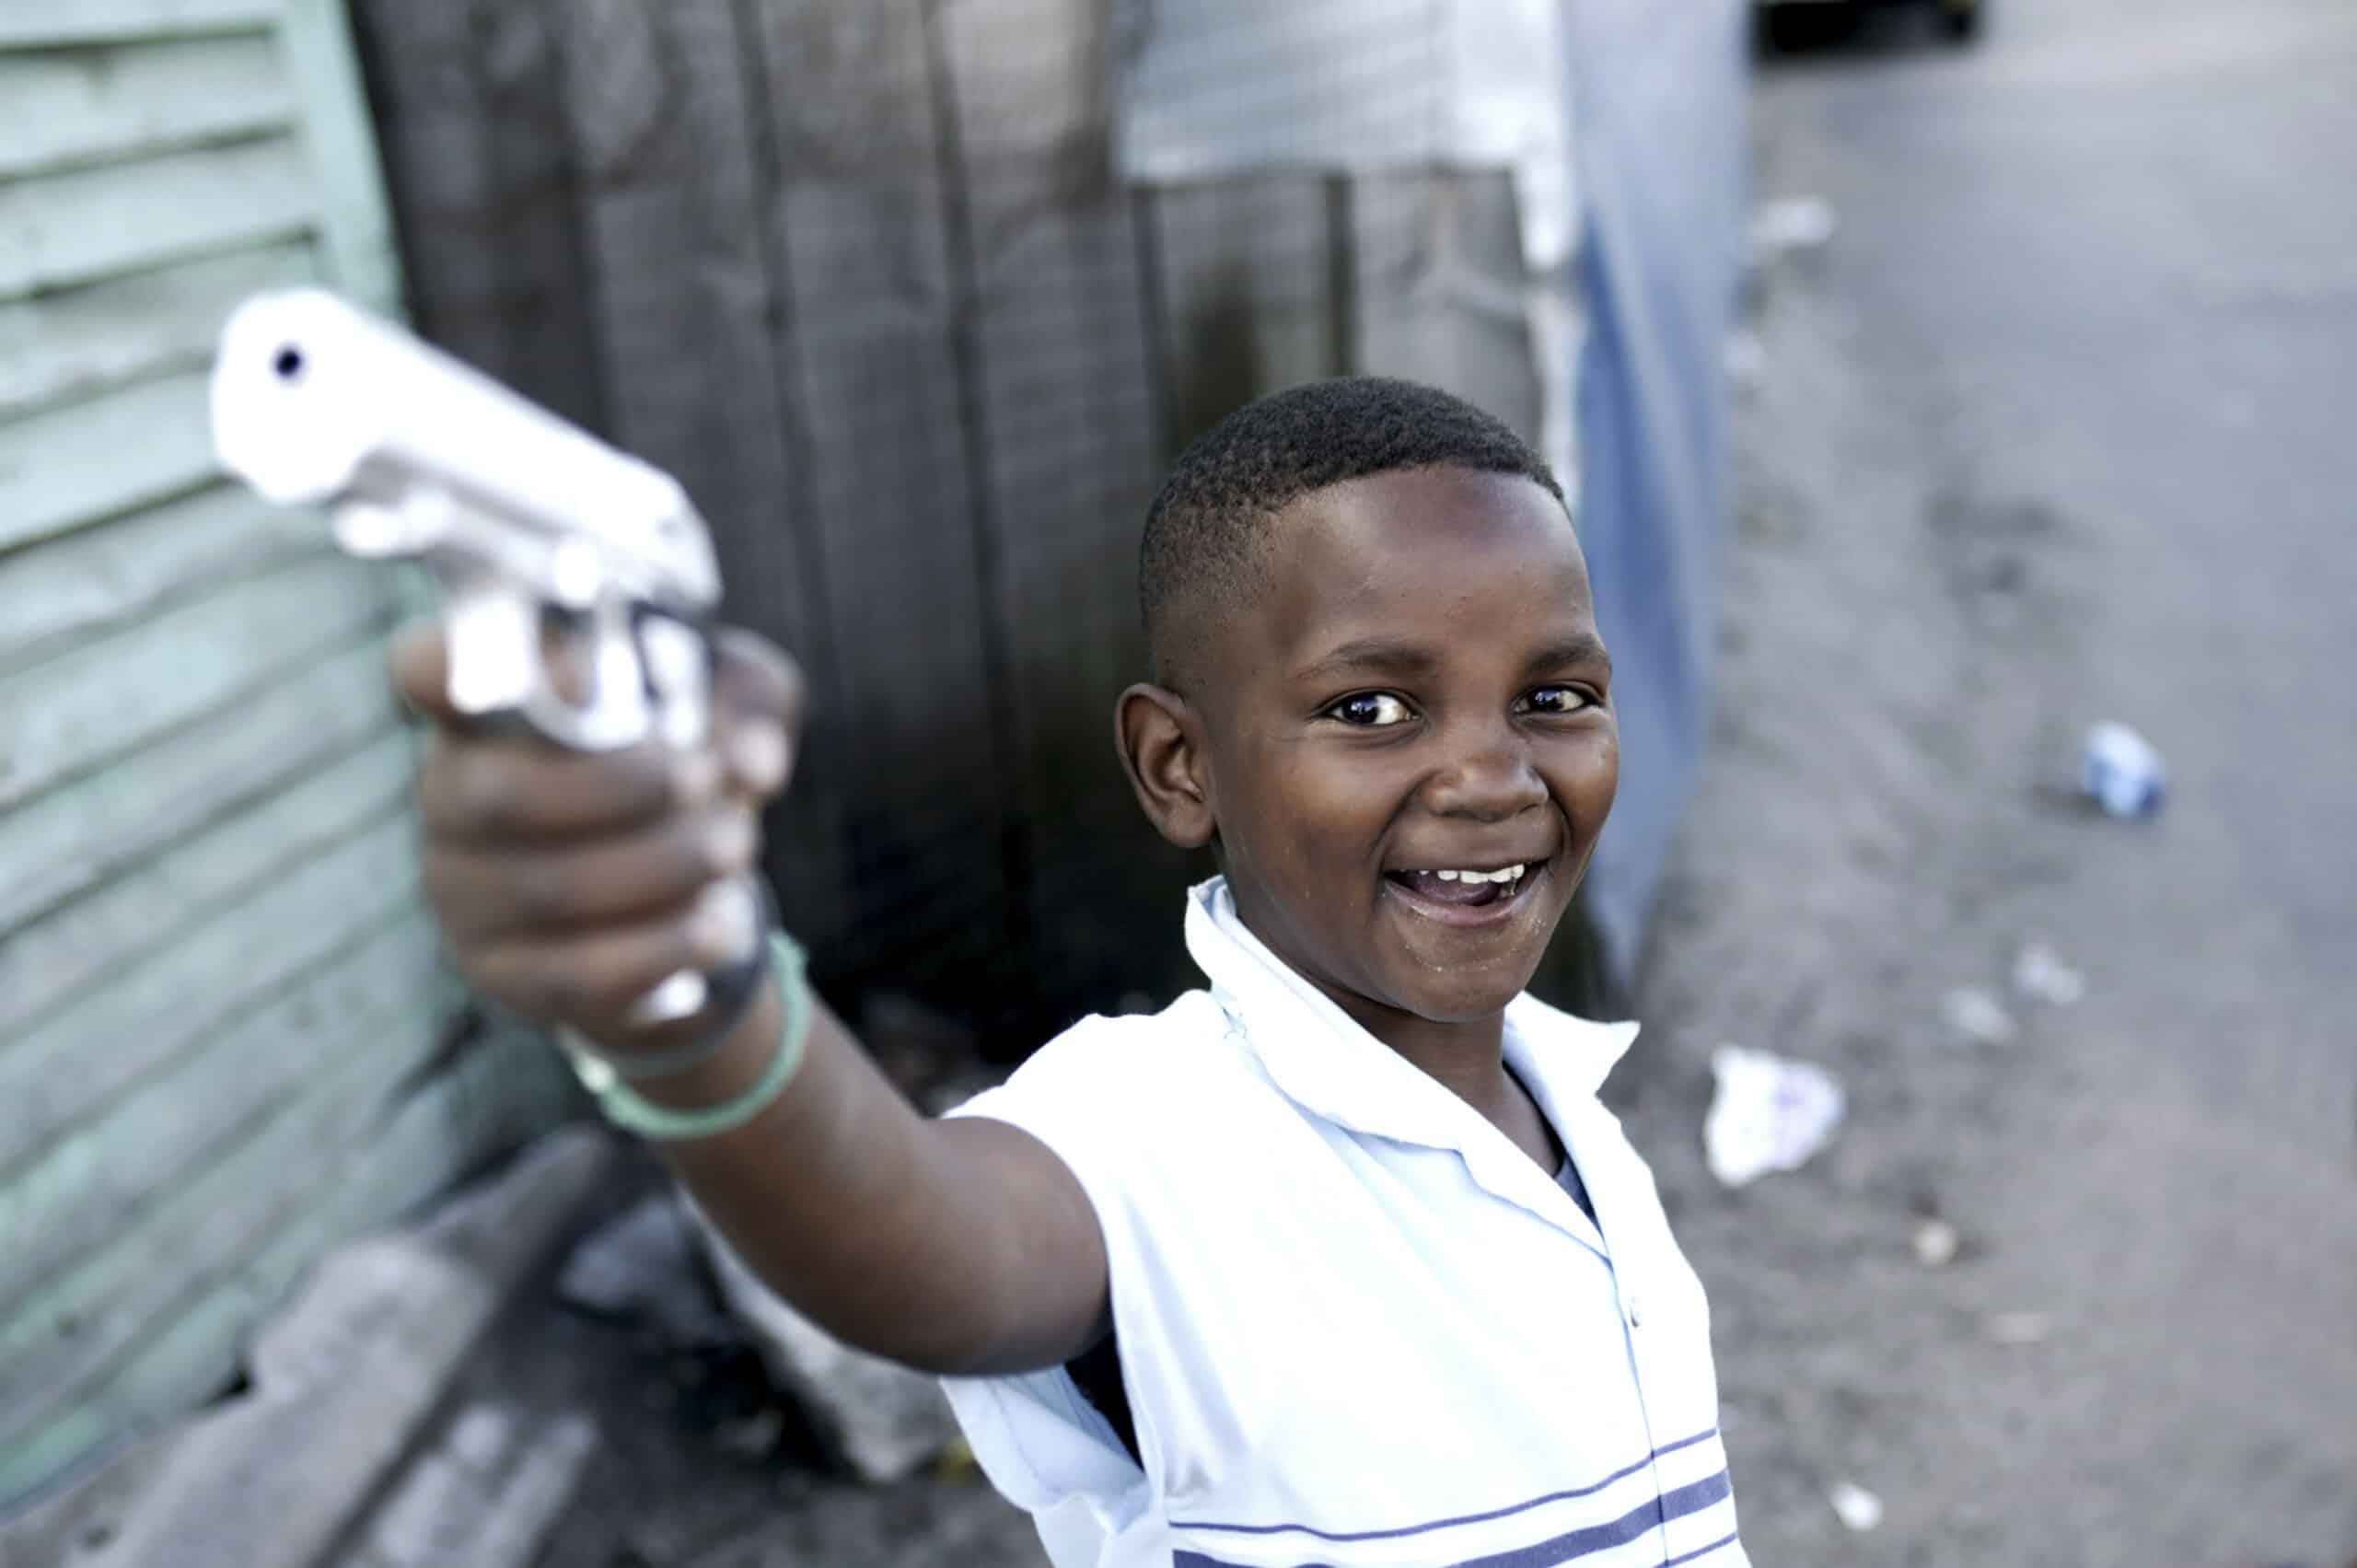 Ein kleiner Junge lächelt breit und richtet auf einer Straße eine Spielzeugpistole in die Kamera. Er trägt ein hellblaues Hemd. Der verschwommene Hintergrund suggeriert eine städtische Umgebung. © Fotografie Tomas Rodriguez